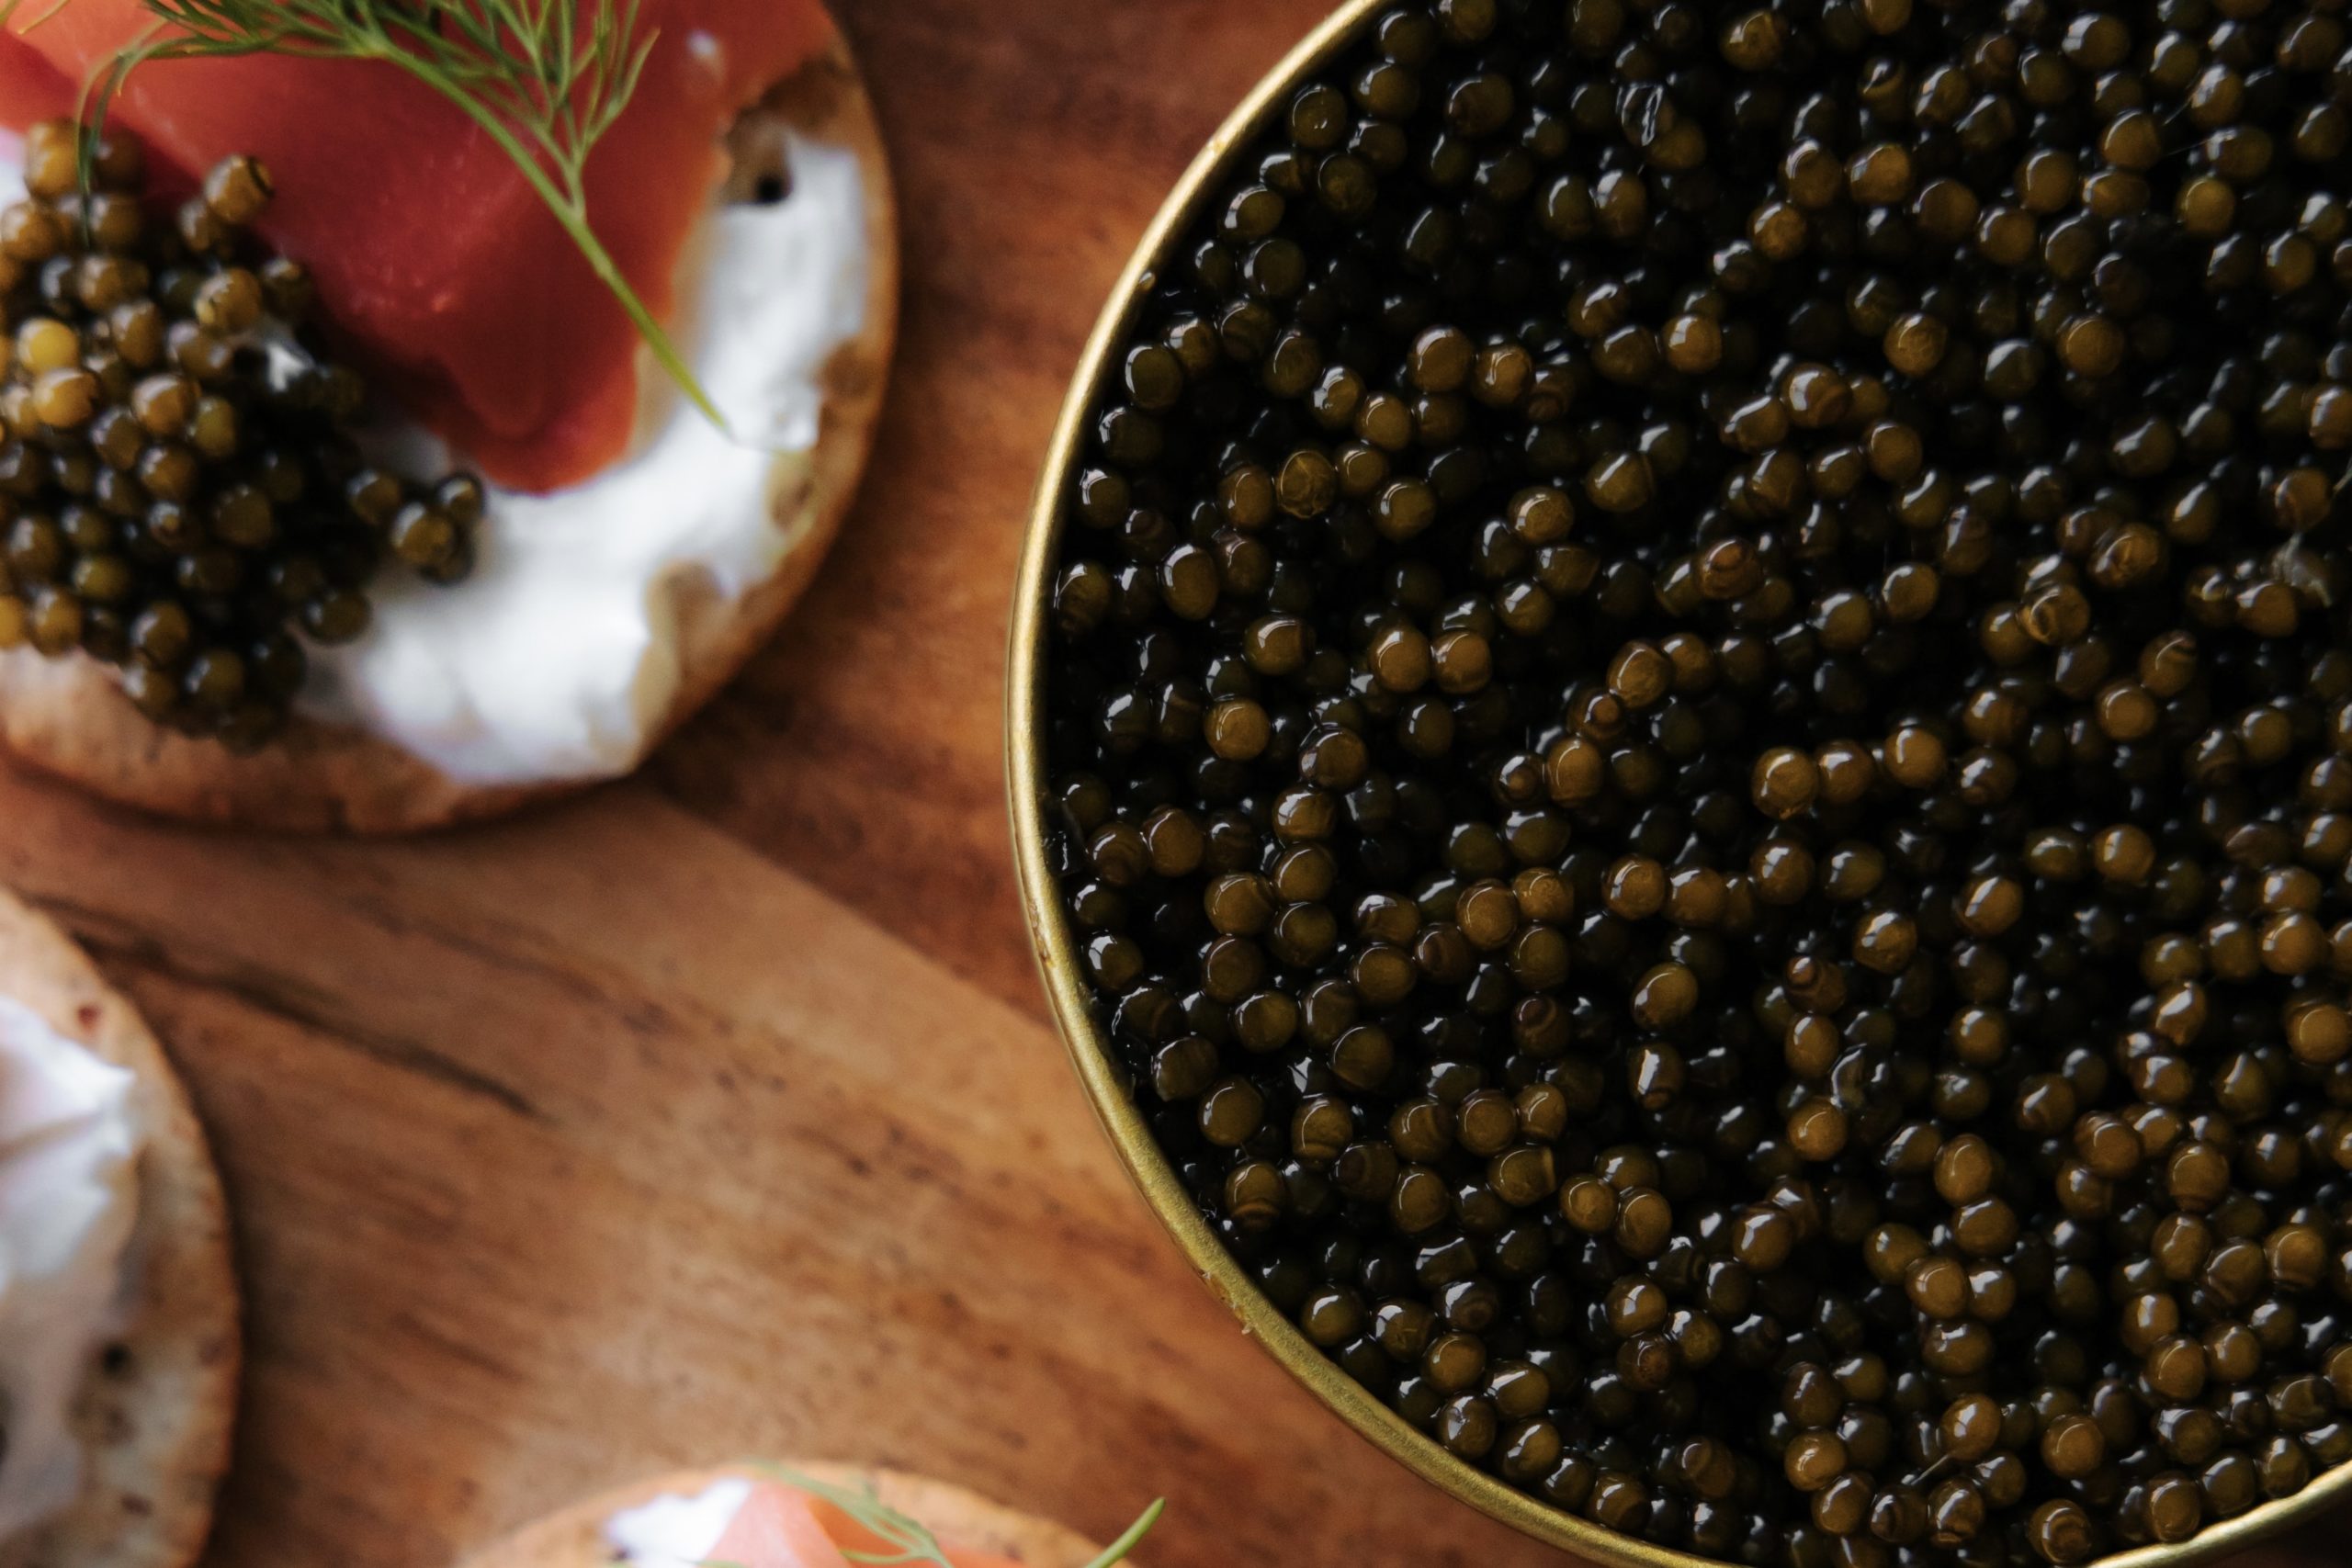 Oeufs de saumon de fontaine - Caviar de l'Isle